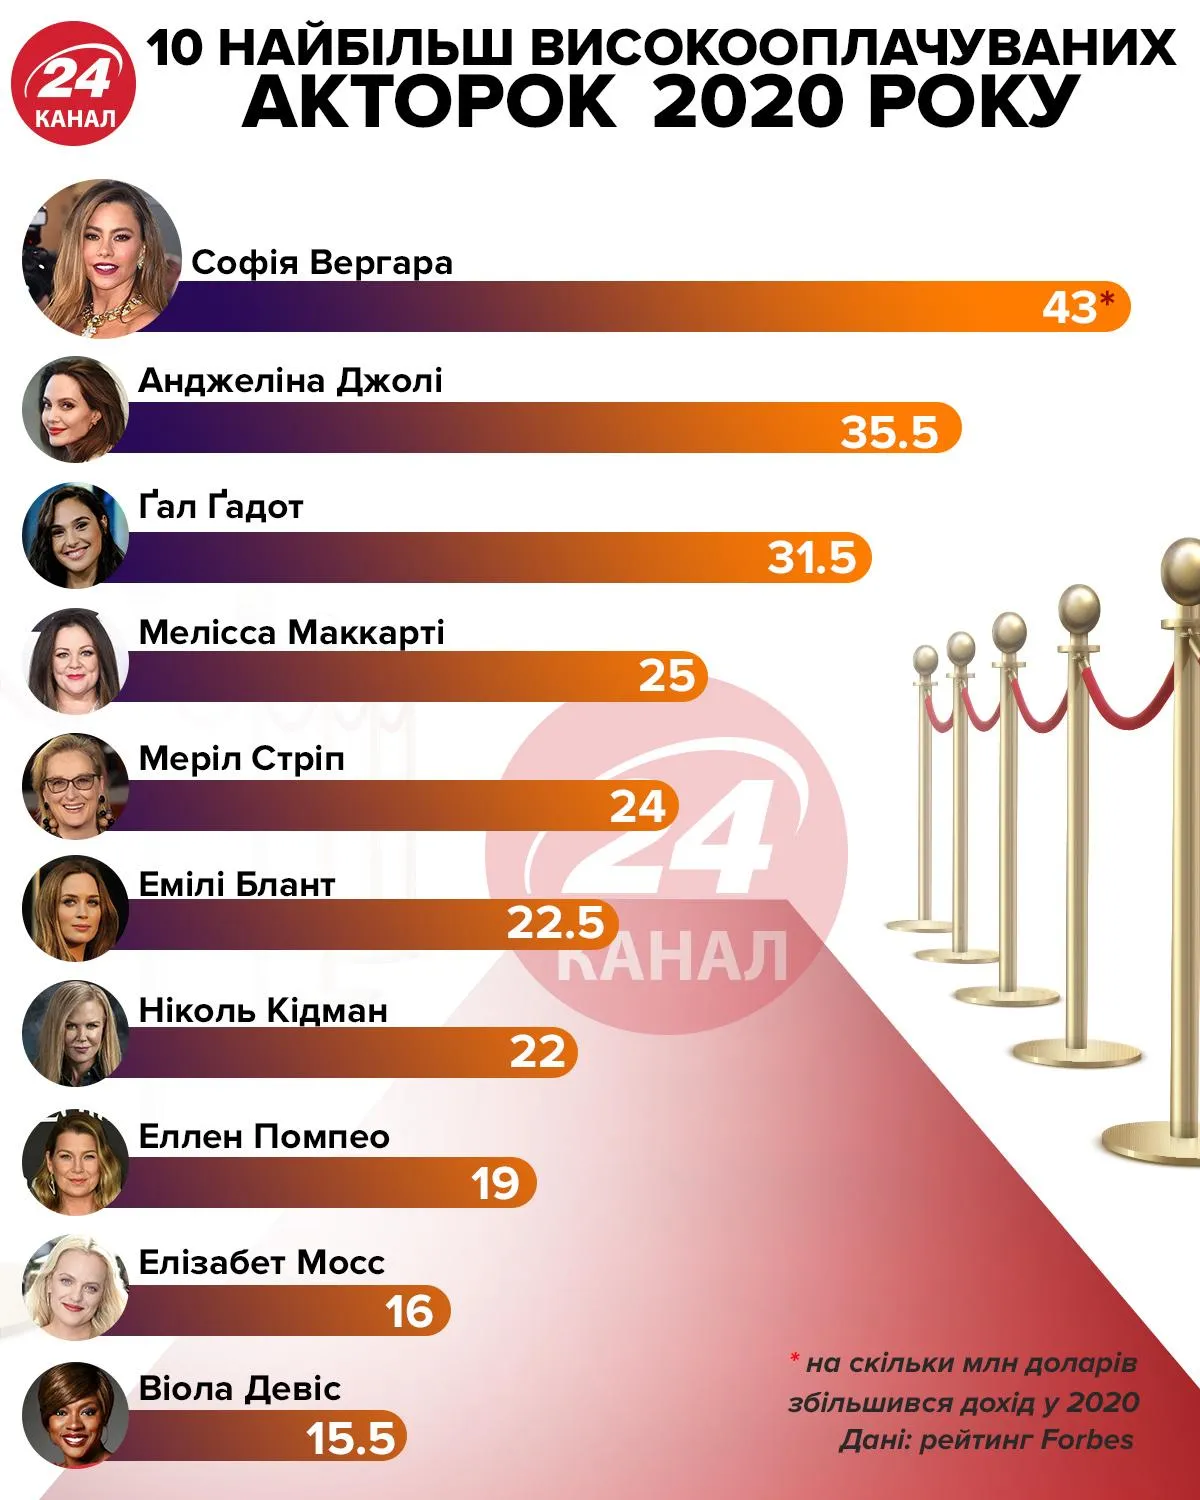 Рейтинг найбільш високооплачуваних акторок 2020 / Інфографіка 24 канал